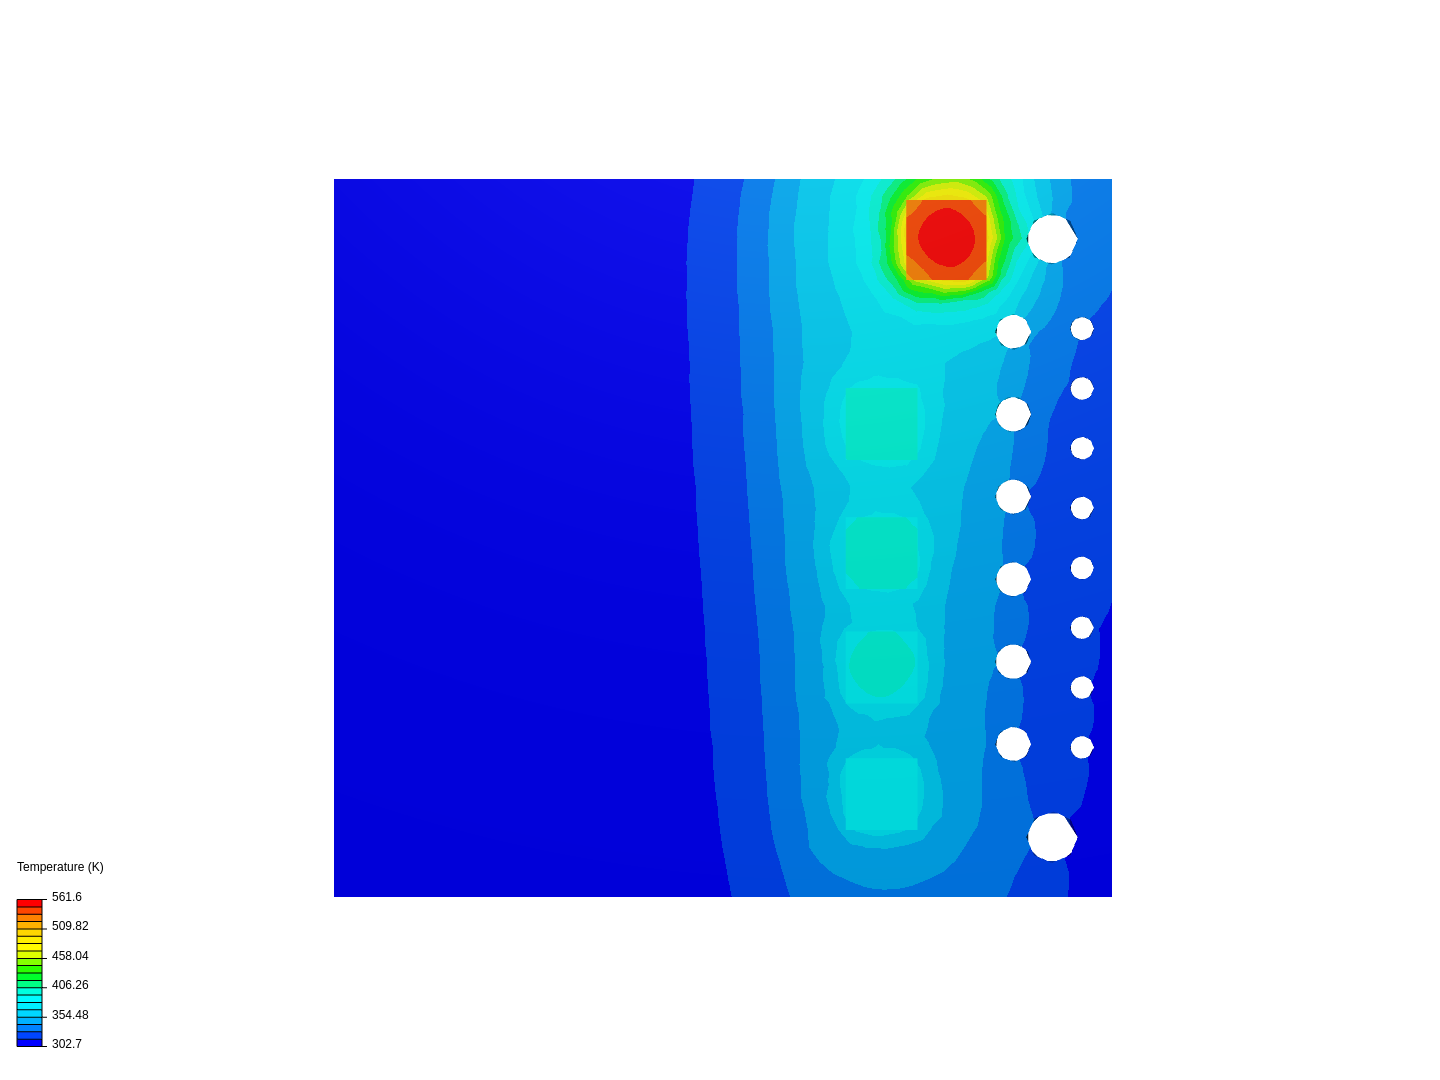 mosfet thermal analysis image